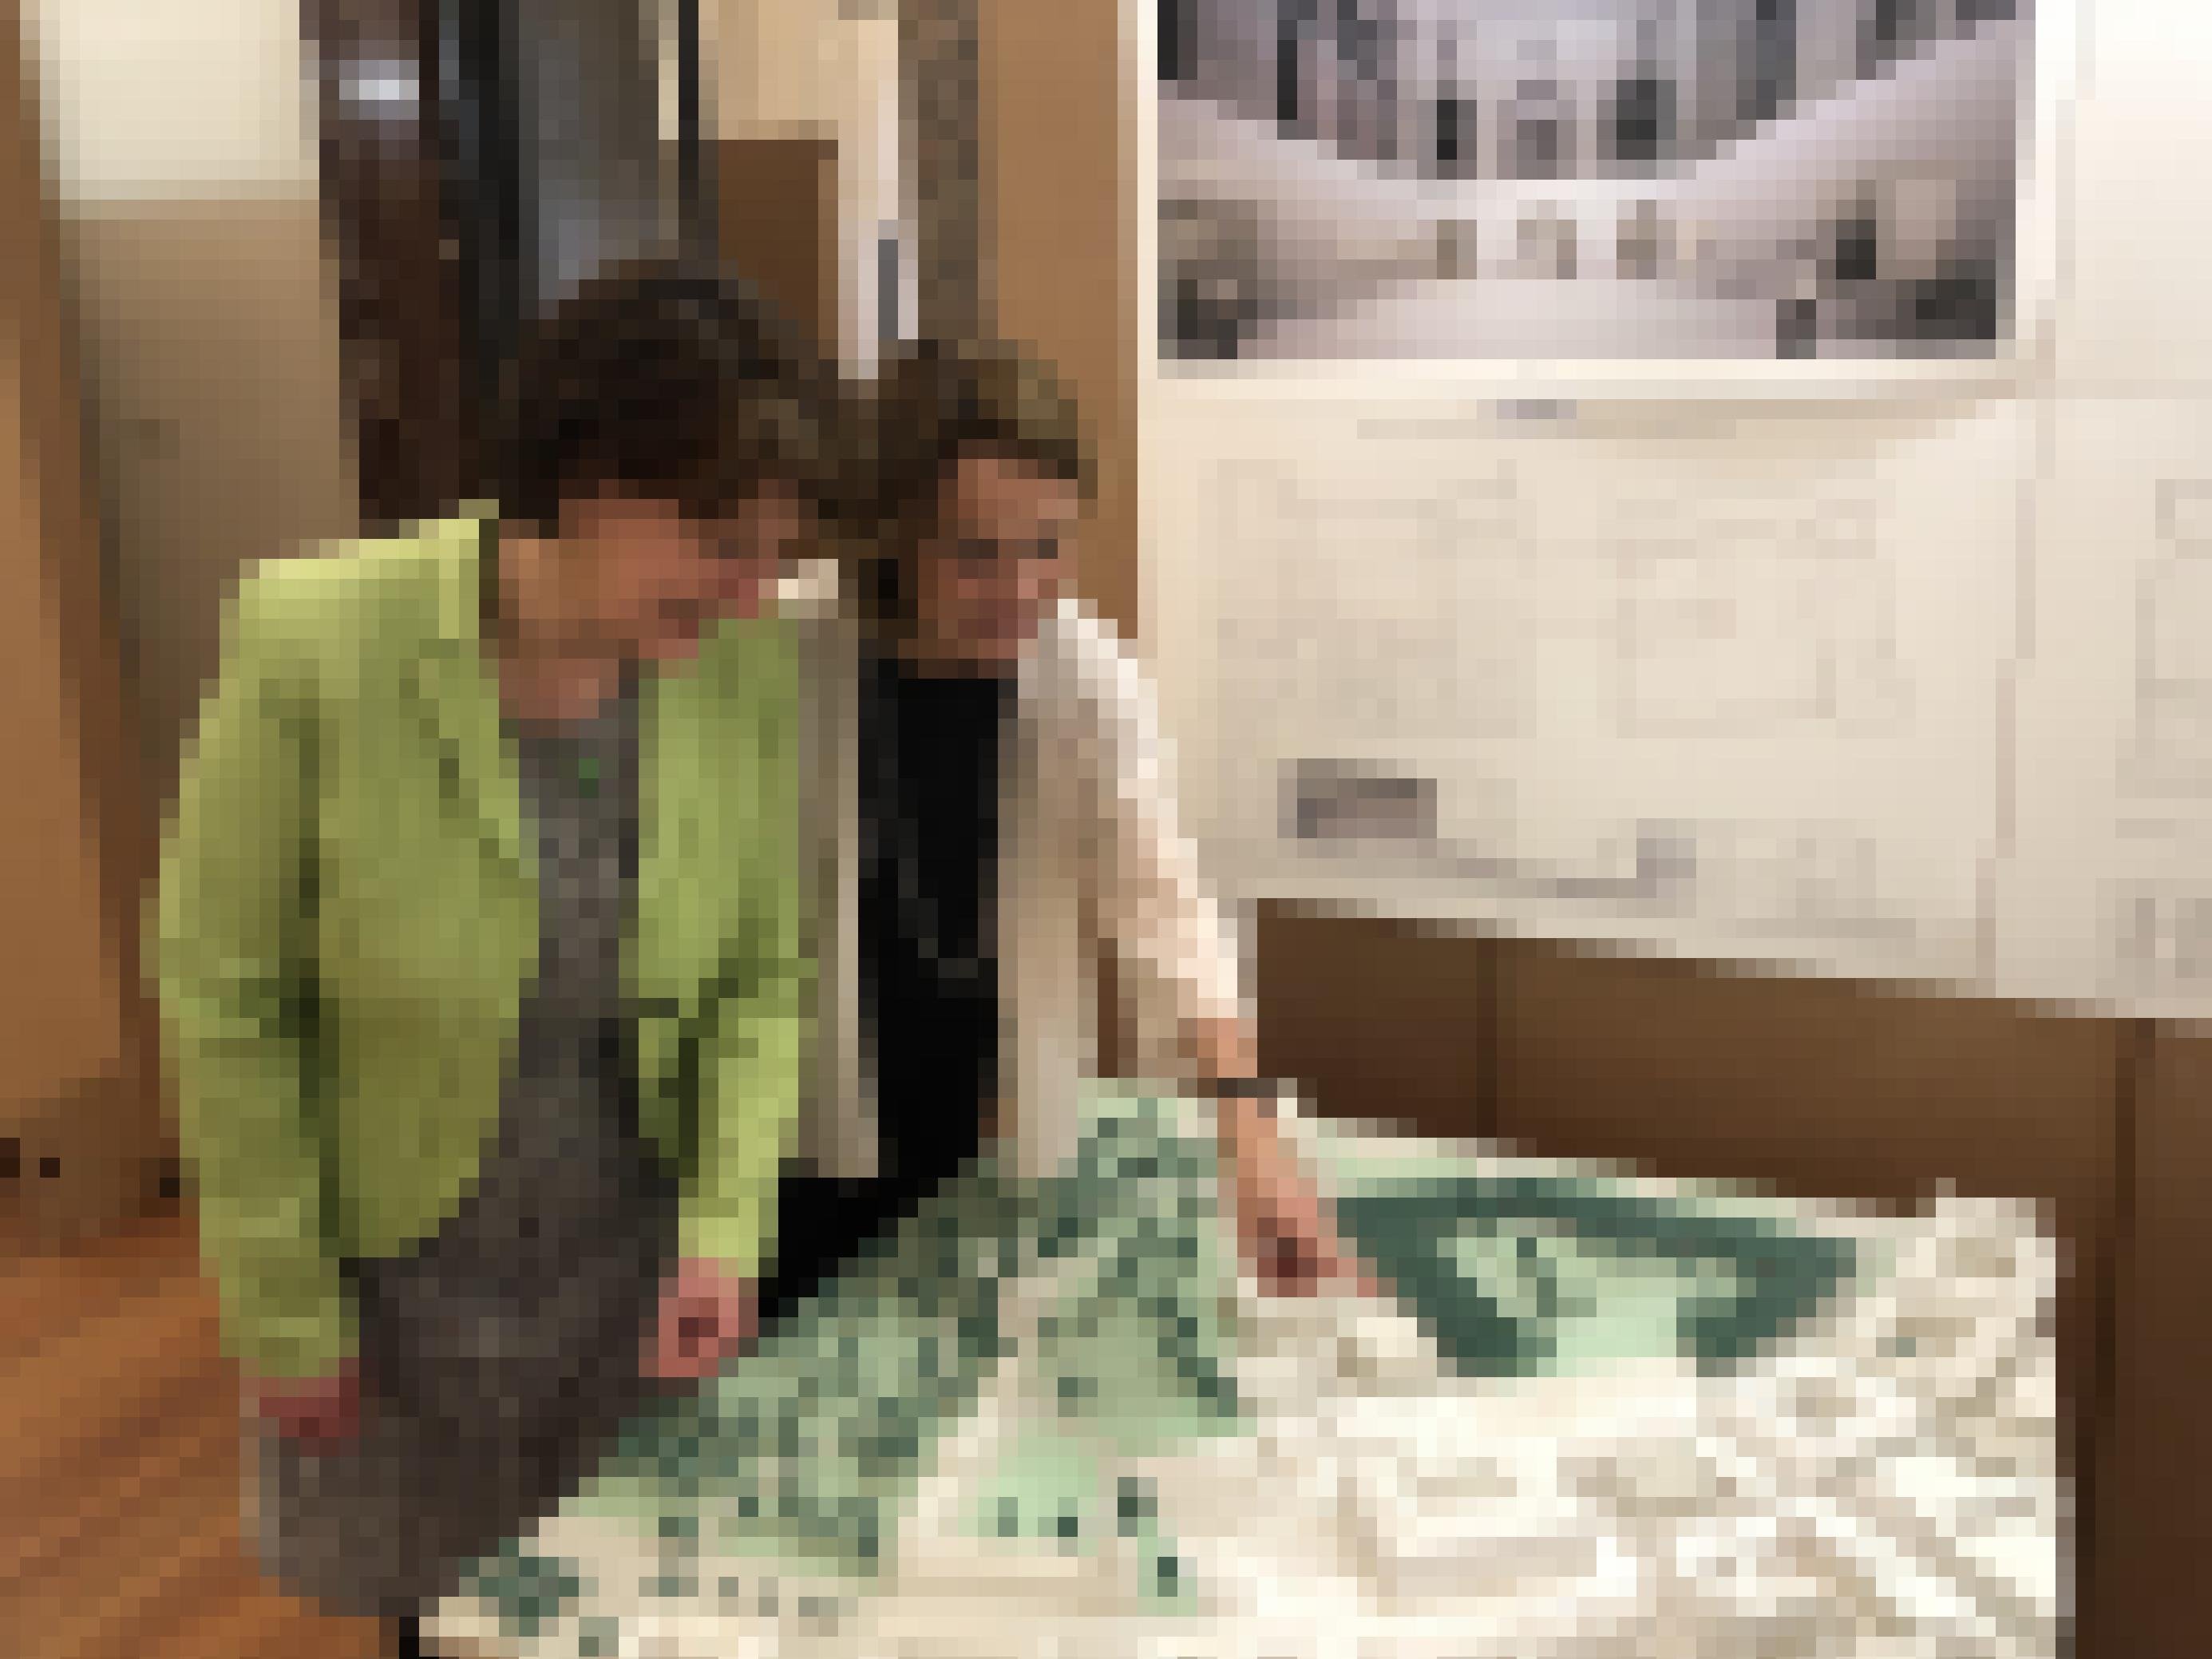 Zwei Frauen betrachten eine Architekturmodell